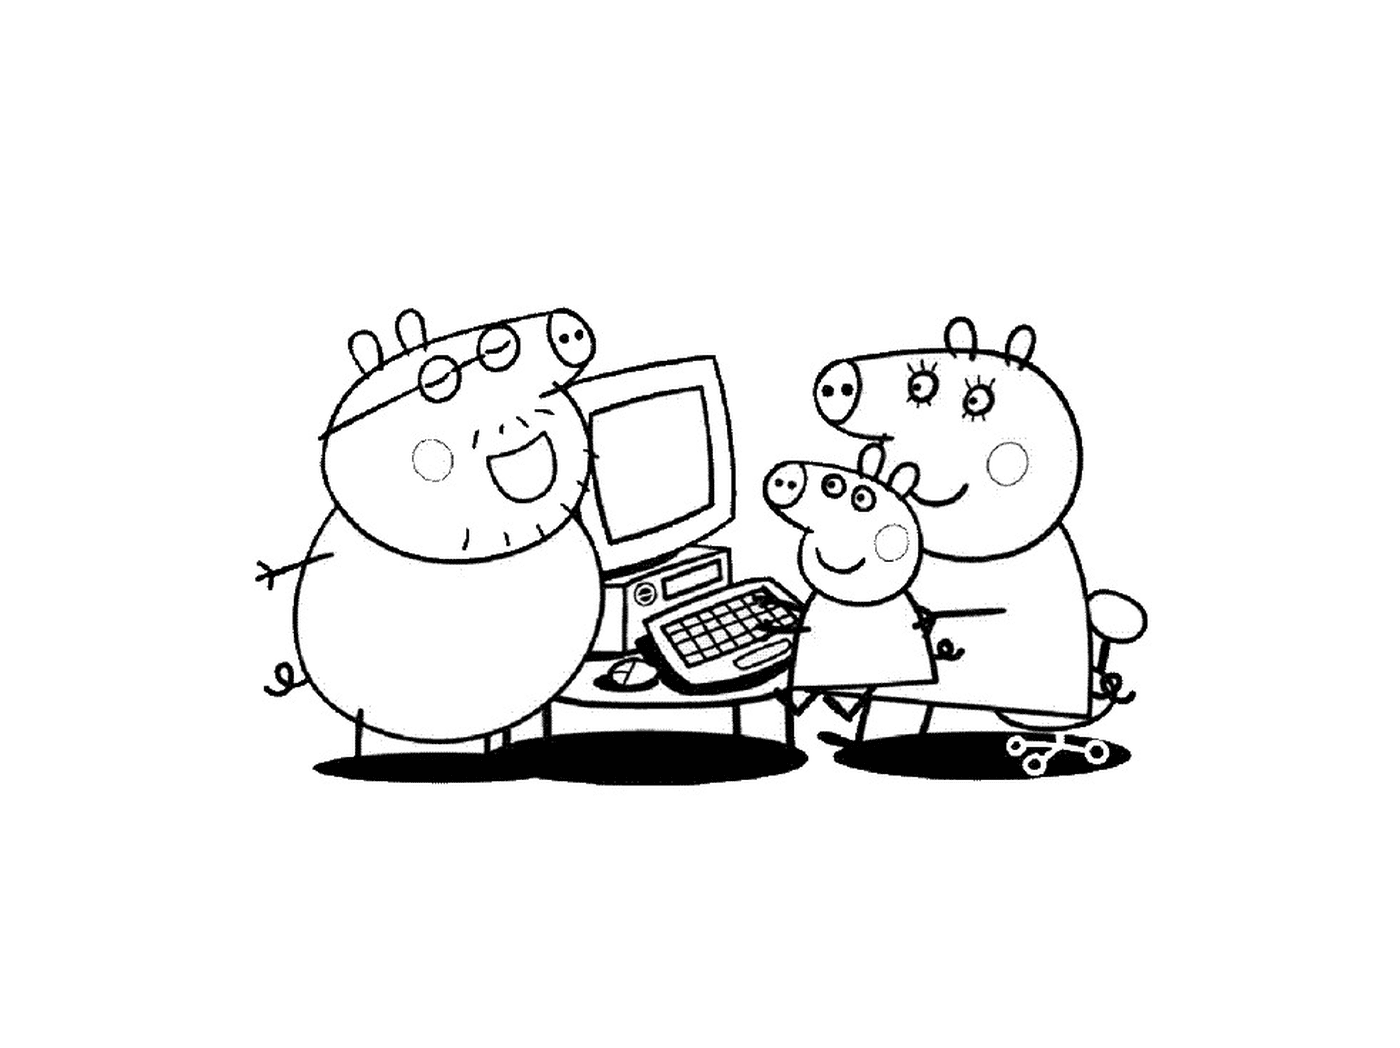  Un gruppo di personaggi di Peppa Pig davanti a un computer 